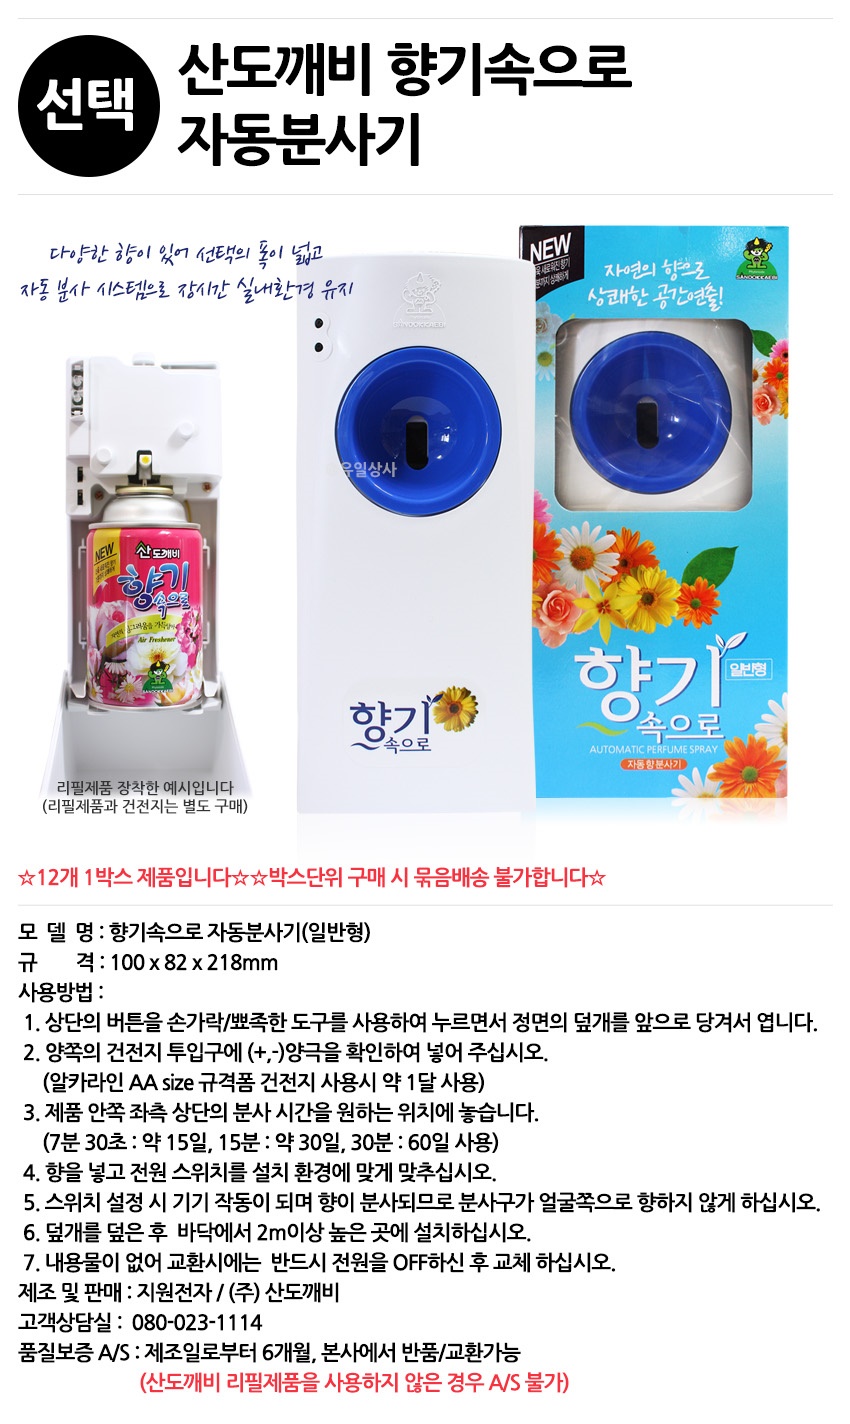 Bộ máy xịt phòng tự động kèm chai xịt phòng cao cấp Sandokkaebi Hàn Quốc 300ml (Màu máy xịt và mùi hương ngẫu nhiên)